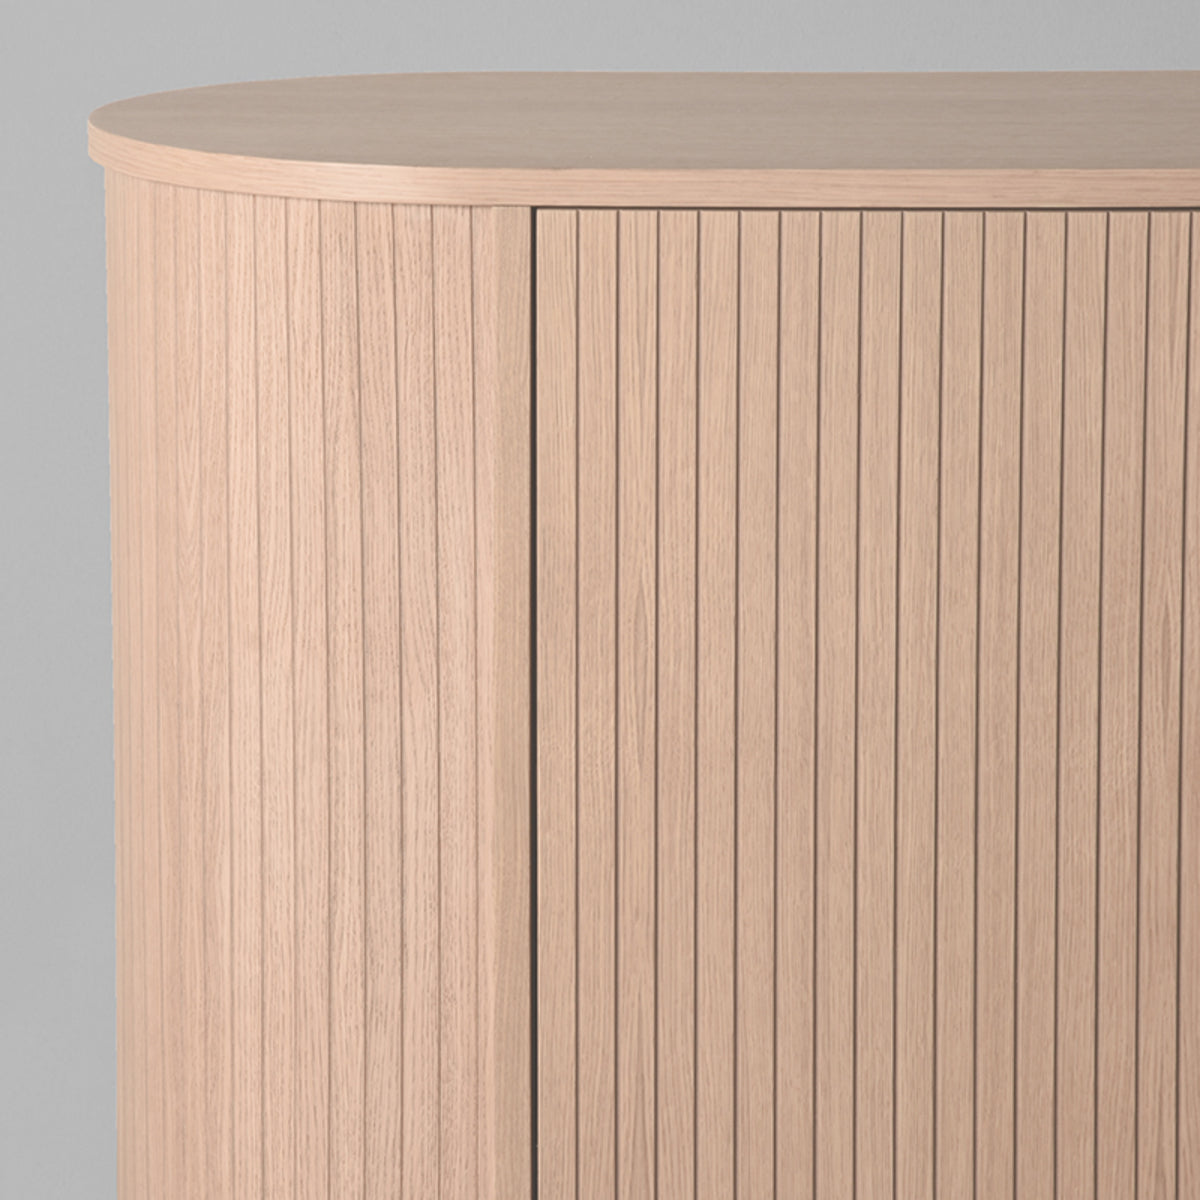 LABEL51 Sideboard Oliva - Natural - Oak - 180 cm